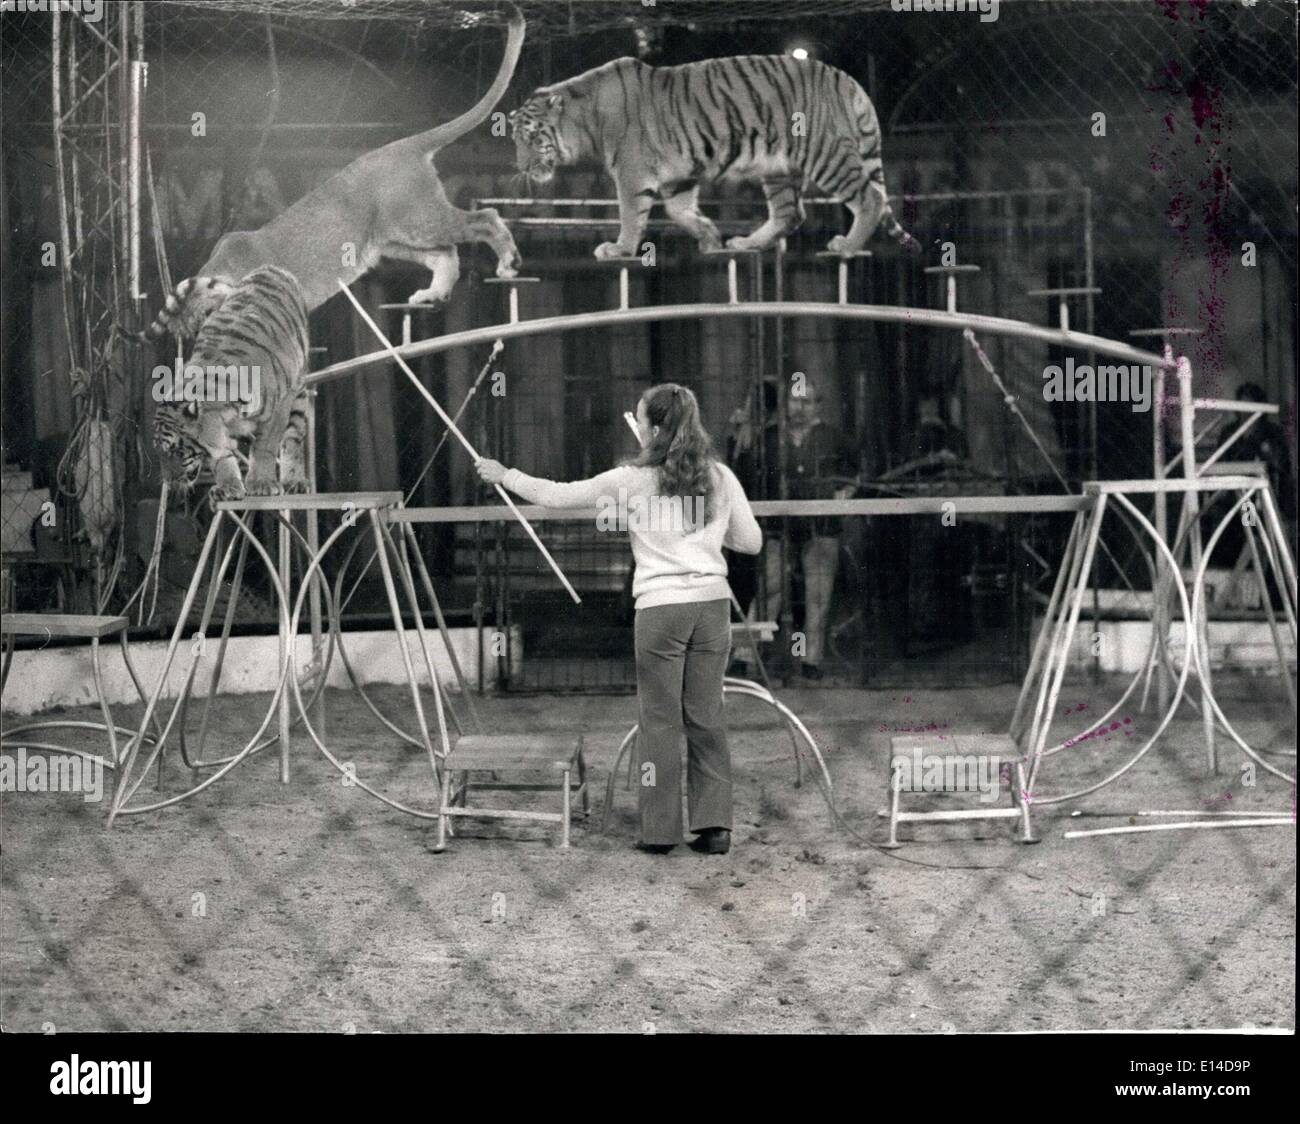 Apr. 17, 2012 - Mary's Circus è tornato in città " Chipperfield's" è per milioni sinonimo di circo, ma Maria Chipperfields Circus è distinto e separato dal suo zio di Dick circus - quello che la maggior parte di noi associa il nome a. La confusione ha infatti portato ad una grave frattura della famiglia e Maria ha dovuto sospendere le attività di circo due anni fa, ma ora è tornato di nuovo - La chiamata dell'anello è irresistibile per un Chipperfield ! Il circus - uno spettacolare show con oltre 50 animali e circa 40 artisti, compresi i clown, trapeze atti, etc Foto Stock